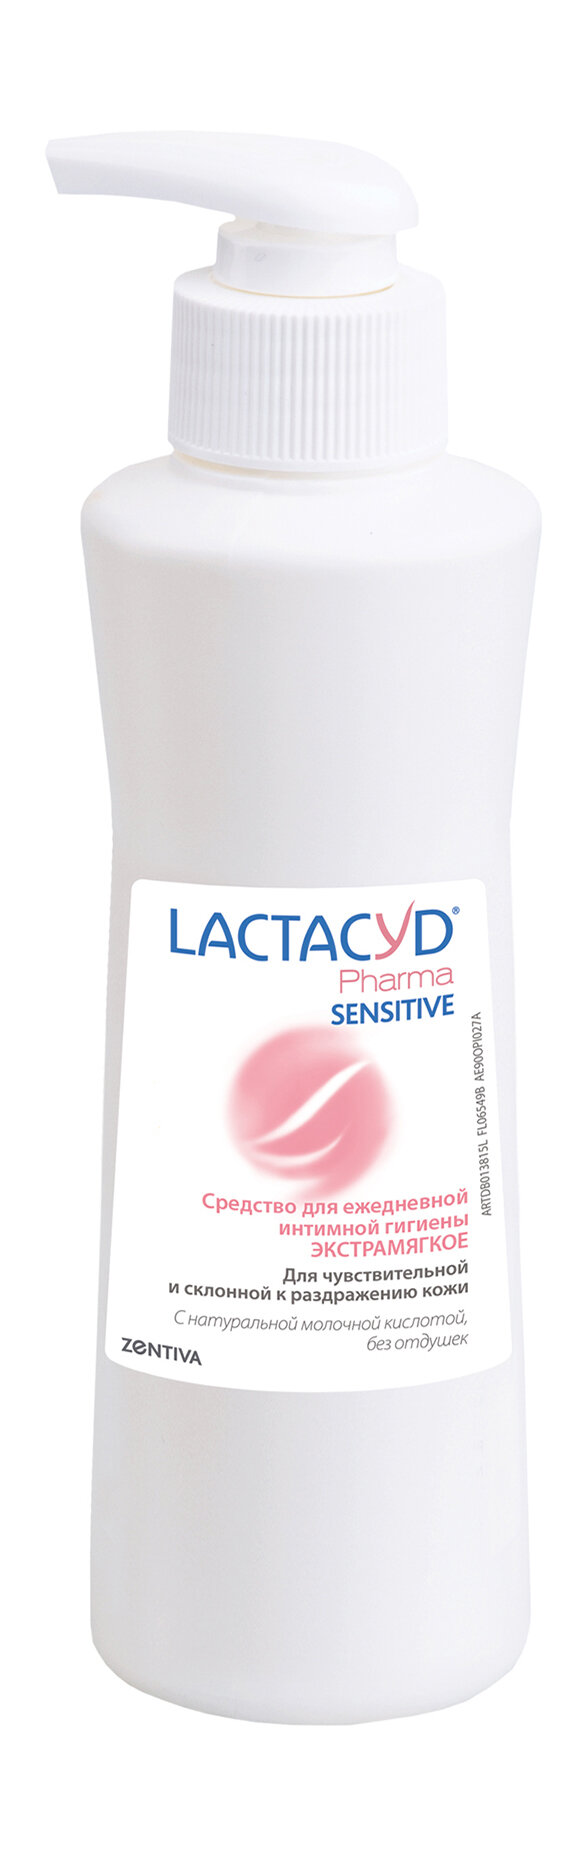 LACTACYD Гель для ежедневной интимной гигиены для чувствительной кожи Lactacyd Pharma Sensitive, 250 мл